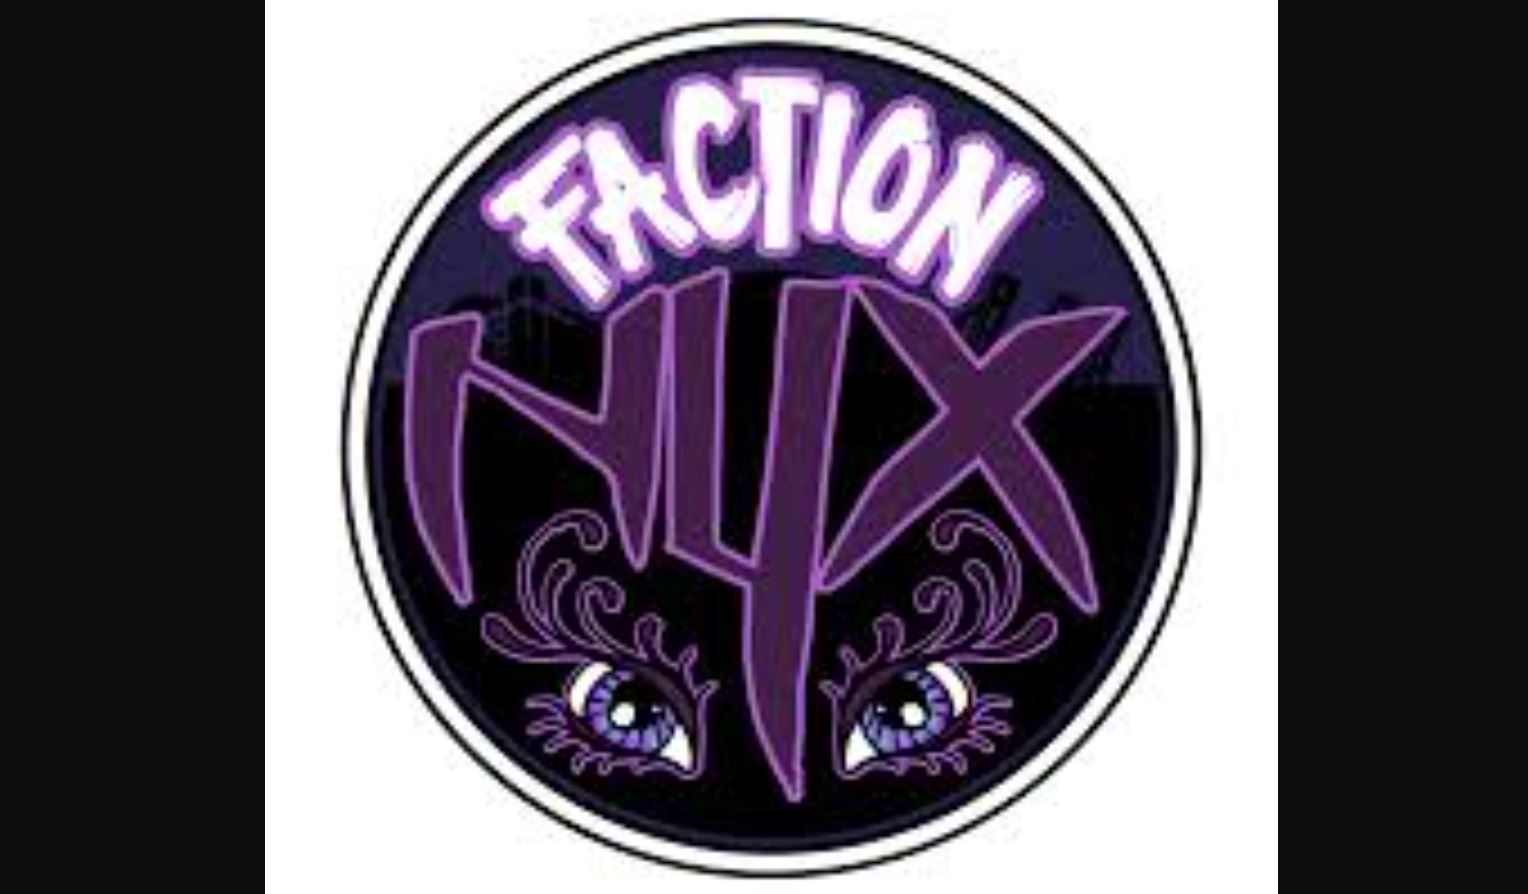 Faction Nyx Stout